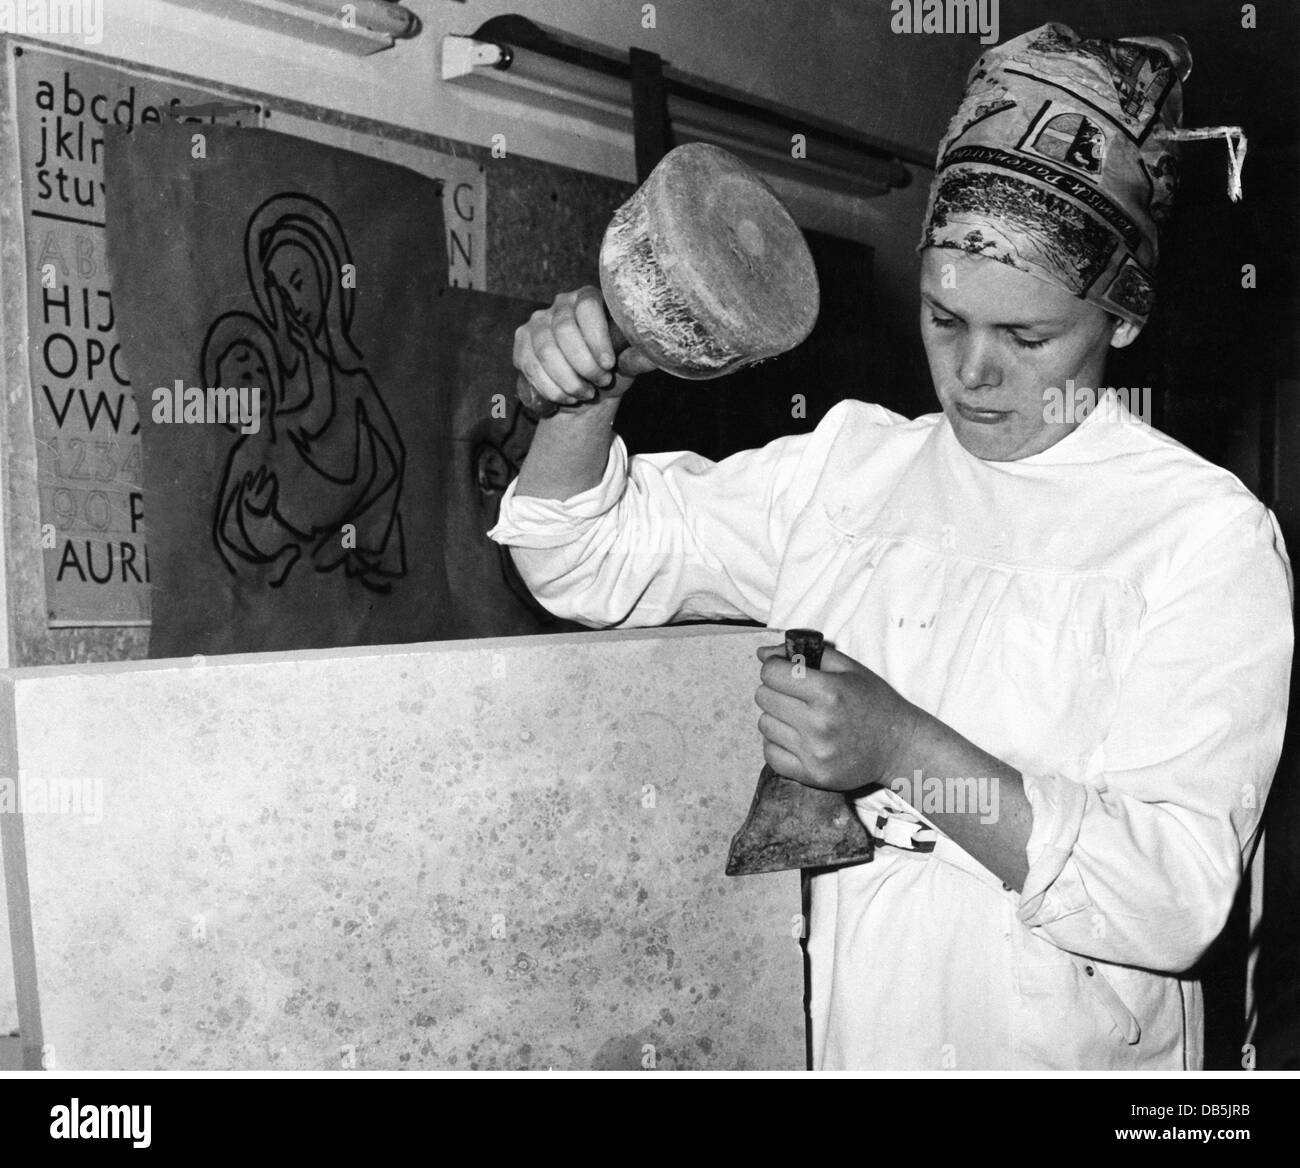 Persone, professioni, stonemason, lapidemason femminile Carola Probst di Tuerkheim al lavoro, Germania occidentale, anni 50, , diritti aggiuntivi-clearences-non disponibile Foto Stock